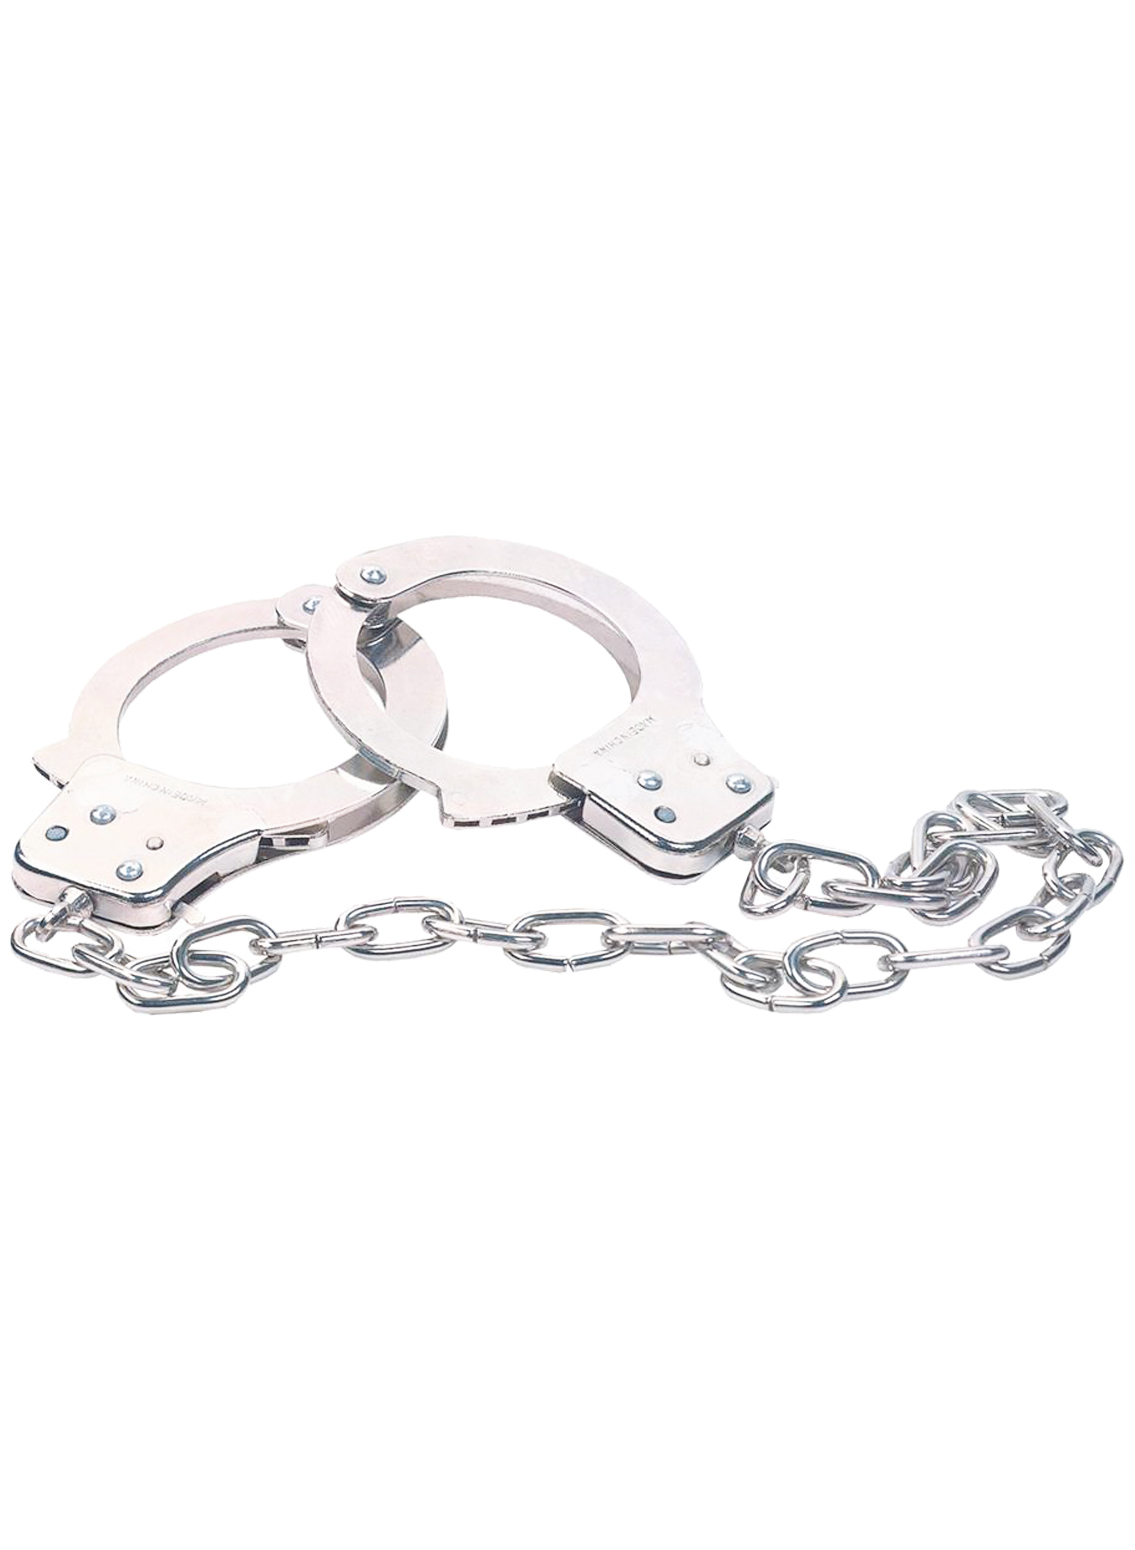 NMC Chrome Handcuffs